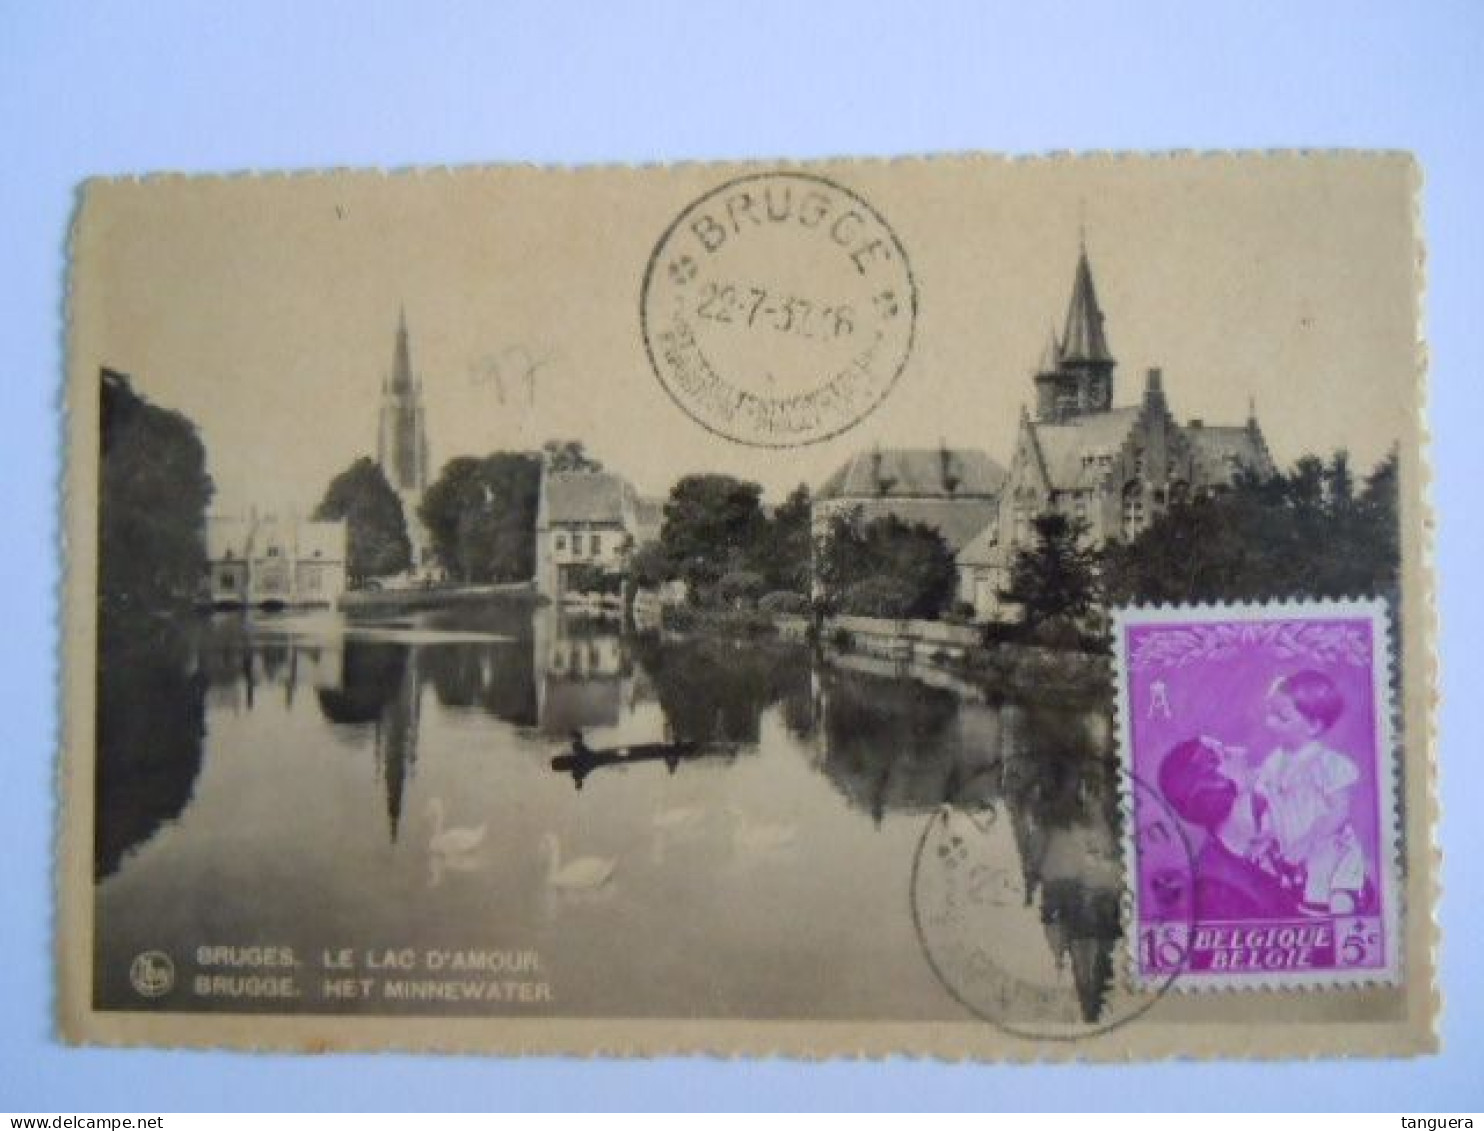 Belgie Reine Koningin Astrid 1937 Cob 447 Op Sur Cp Brugge Le Lac D'amour Het Minnewater (703) - Cartas & Documentos